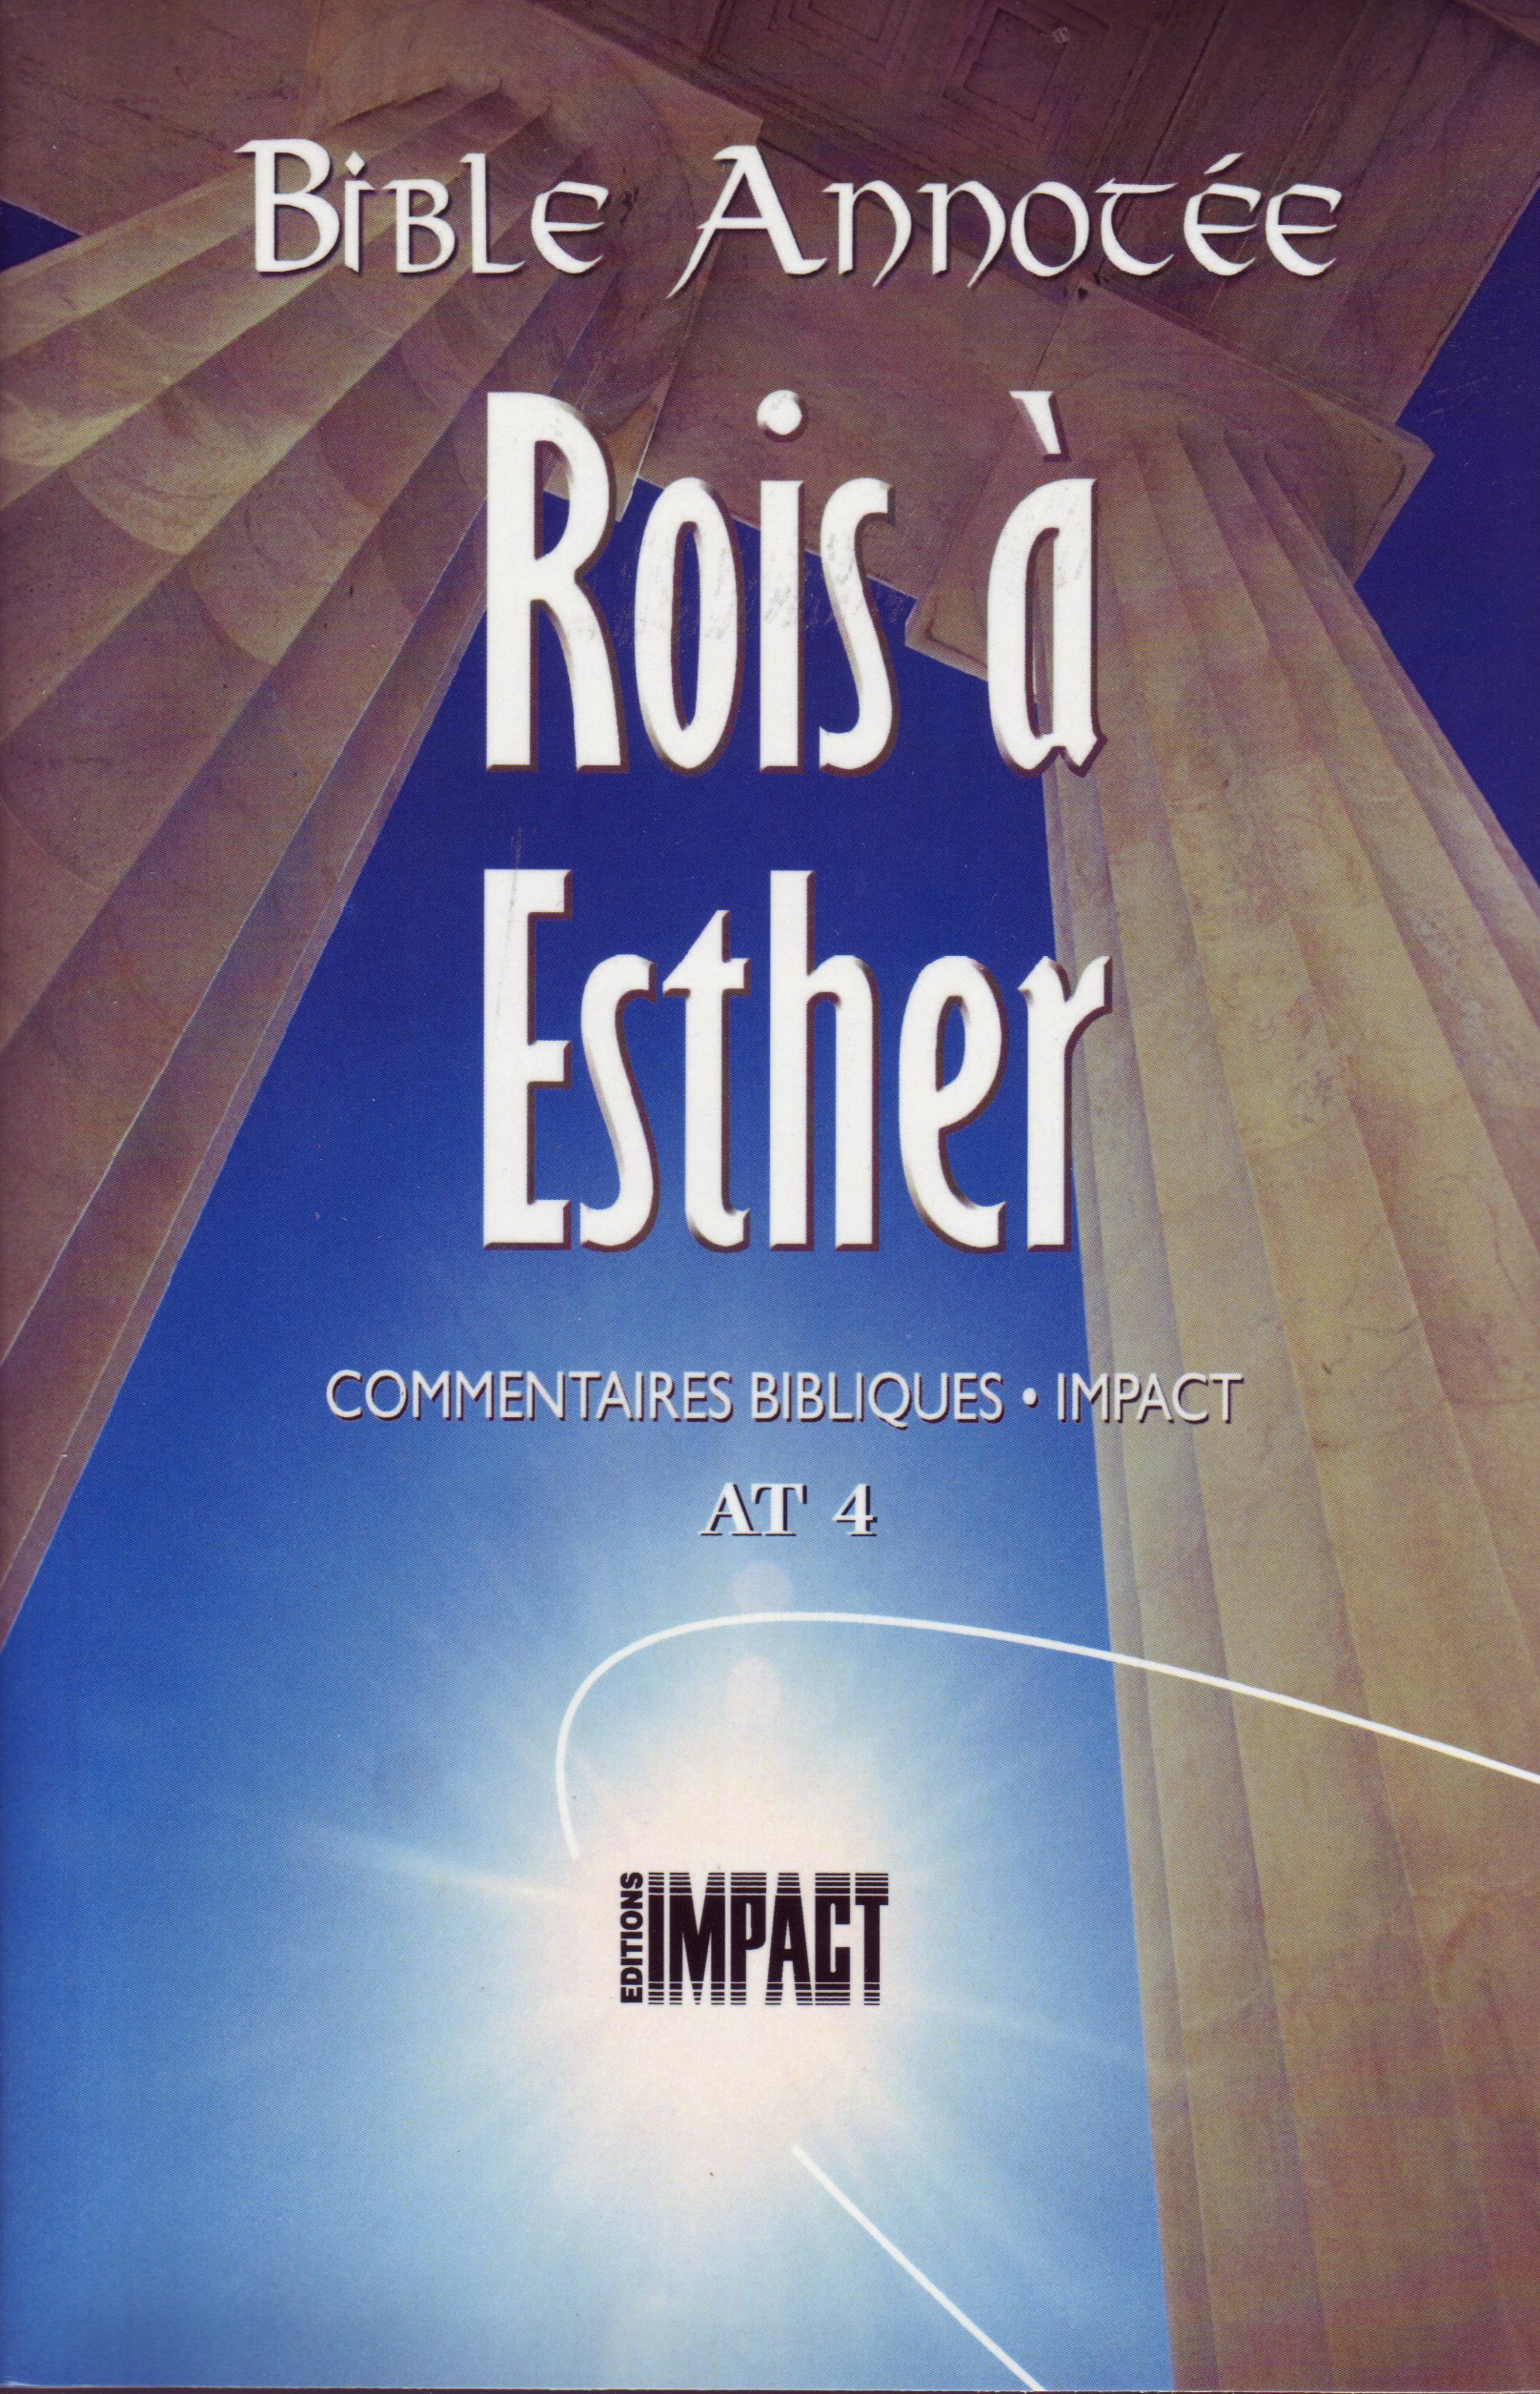 Bible annotée (La), Rois, Esther - Commentaires bibliques Impact AT 4